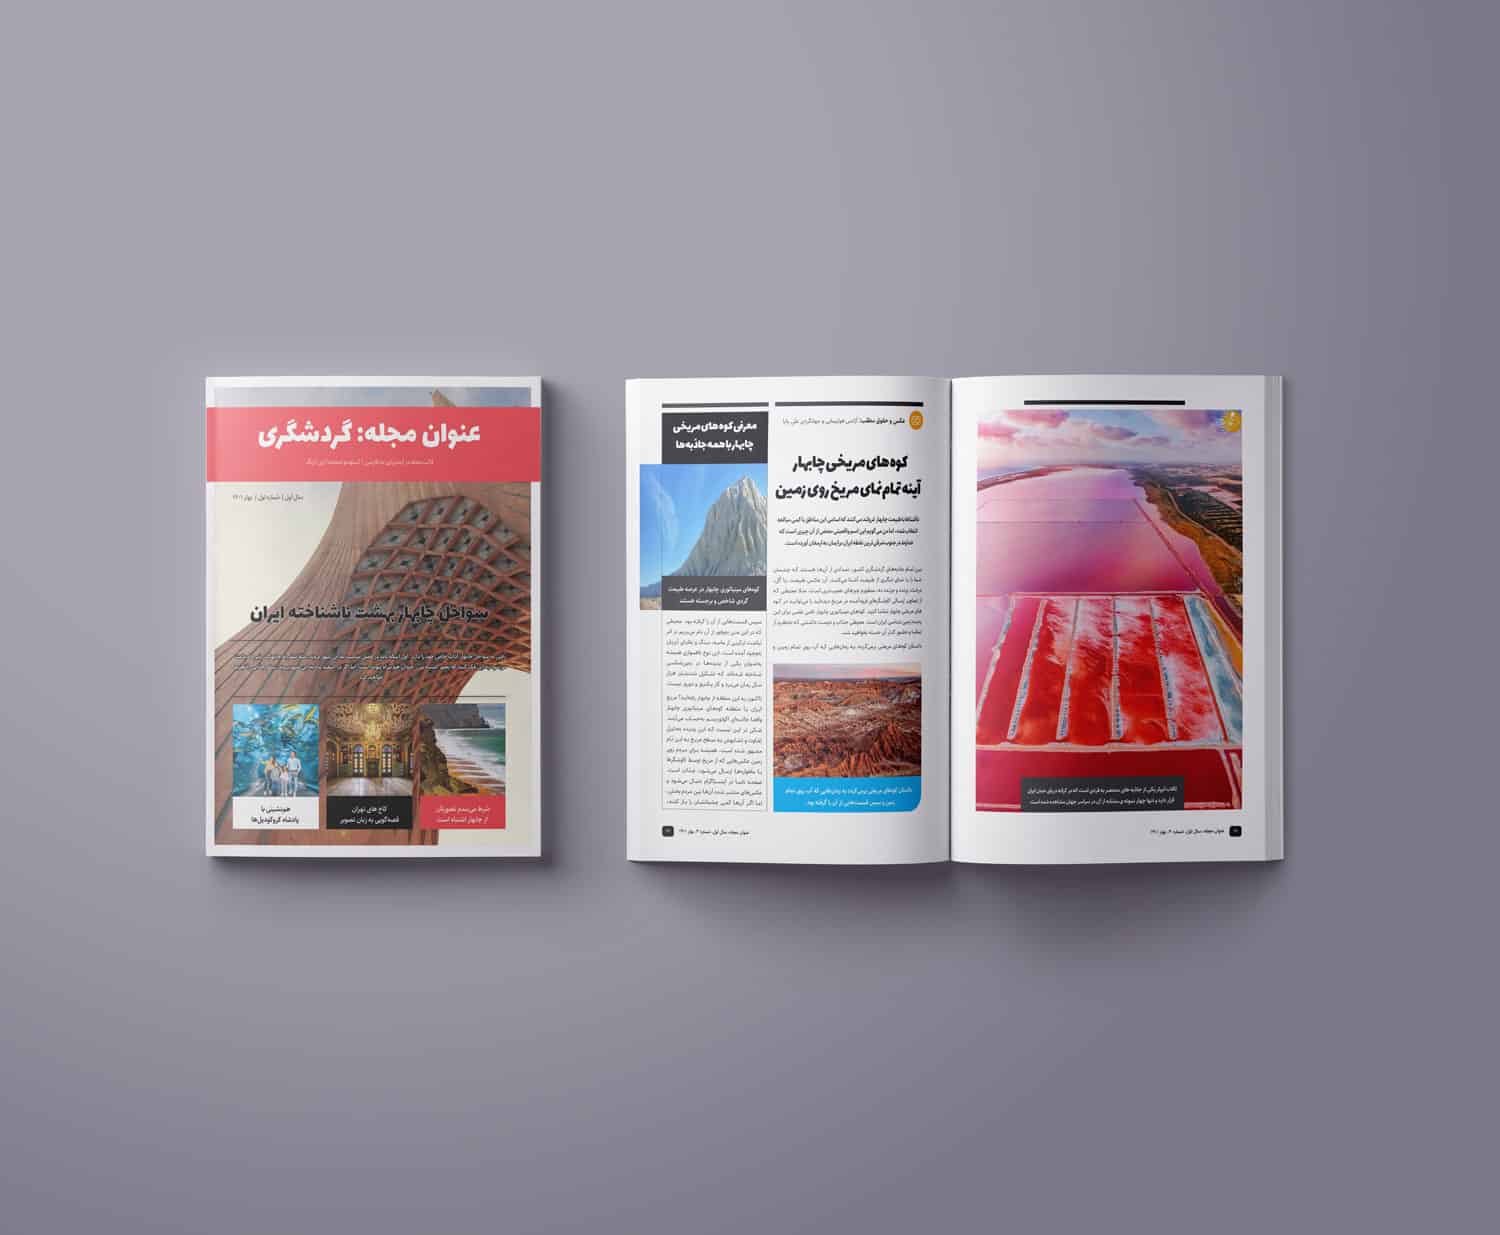 قالب آماده صفحه آرایی و طراحی مجله